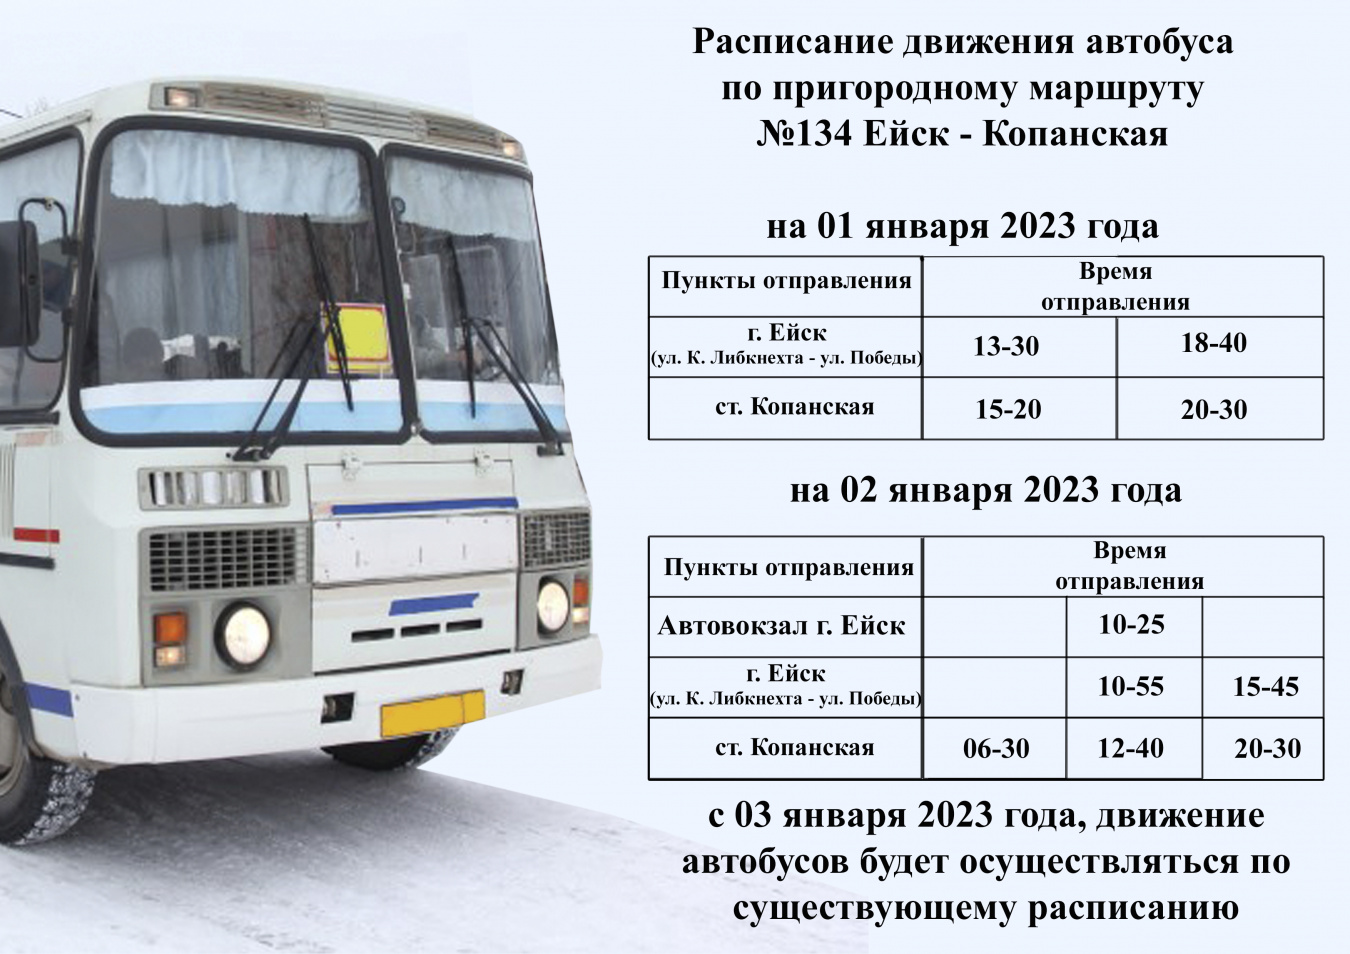 Расписание автобусов в новогодние праздничные дни